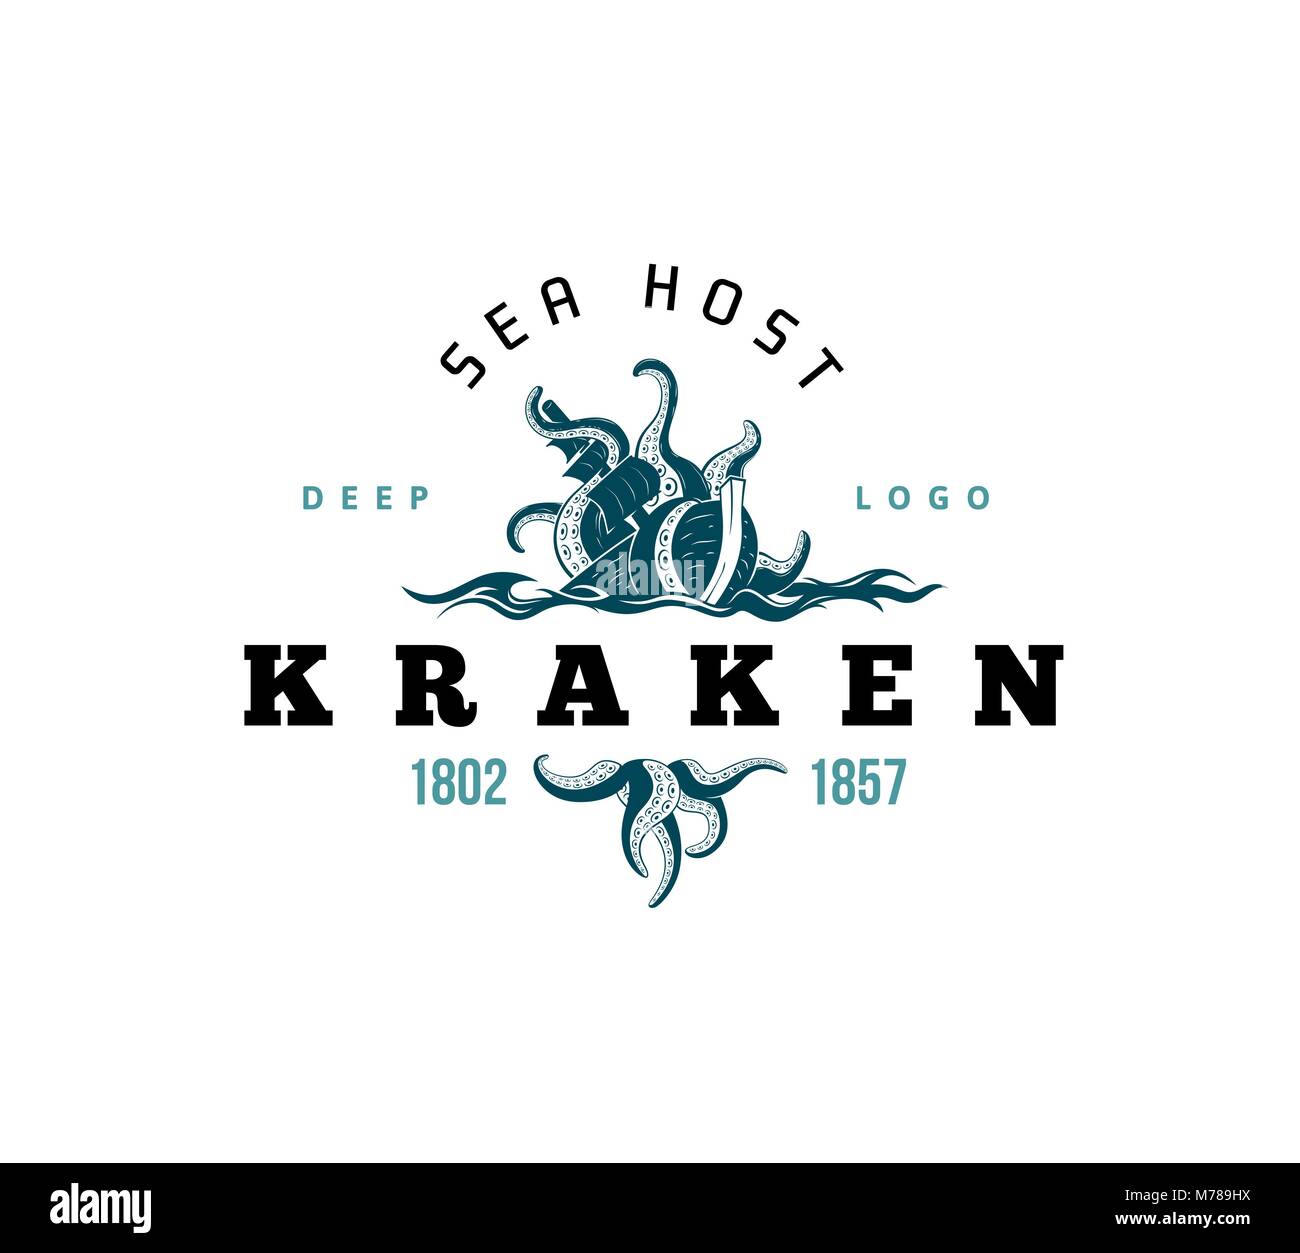 Giant evil kraken logo, silhouette octopus sea monster with tentacles Stock Vector